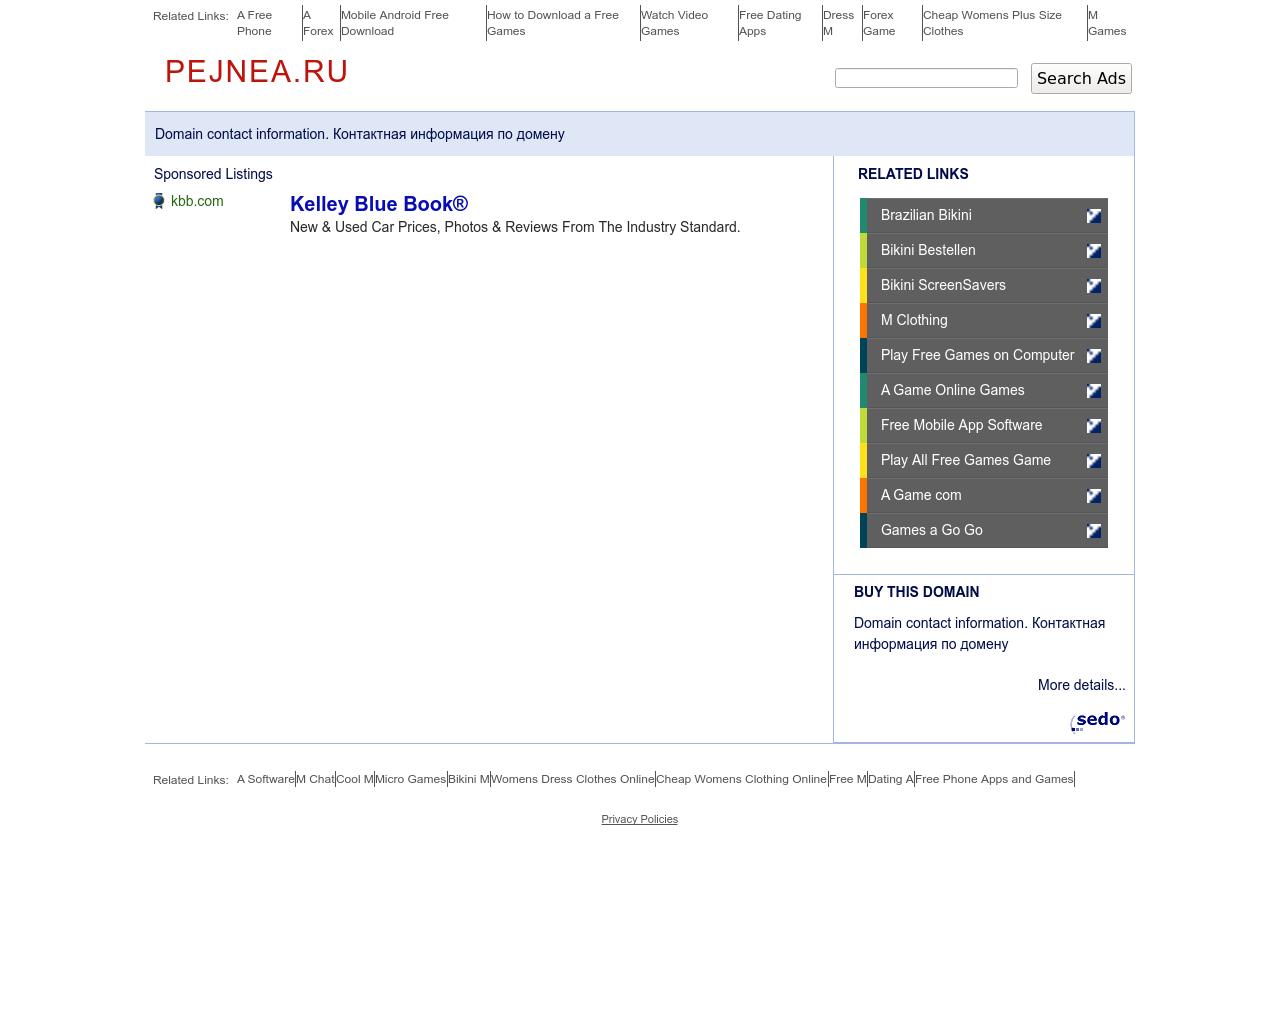 Изображение сайта pejnea.ru в разрешении 1280x1024